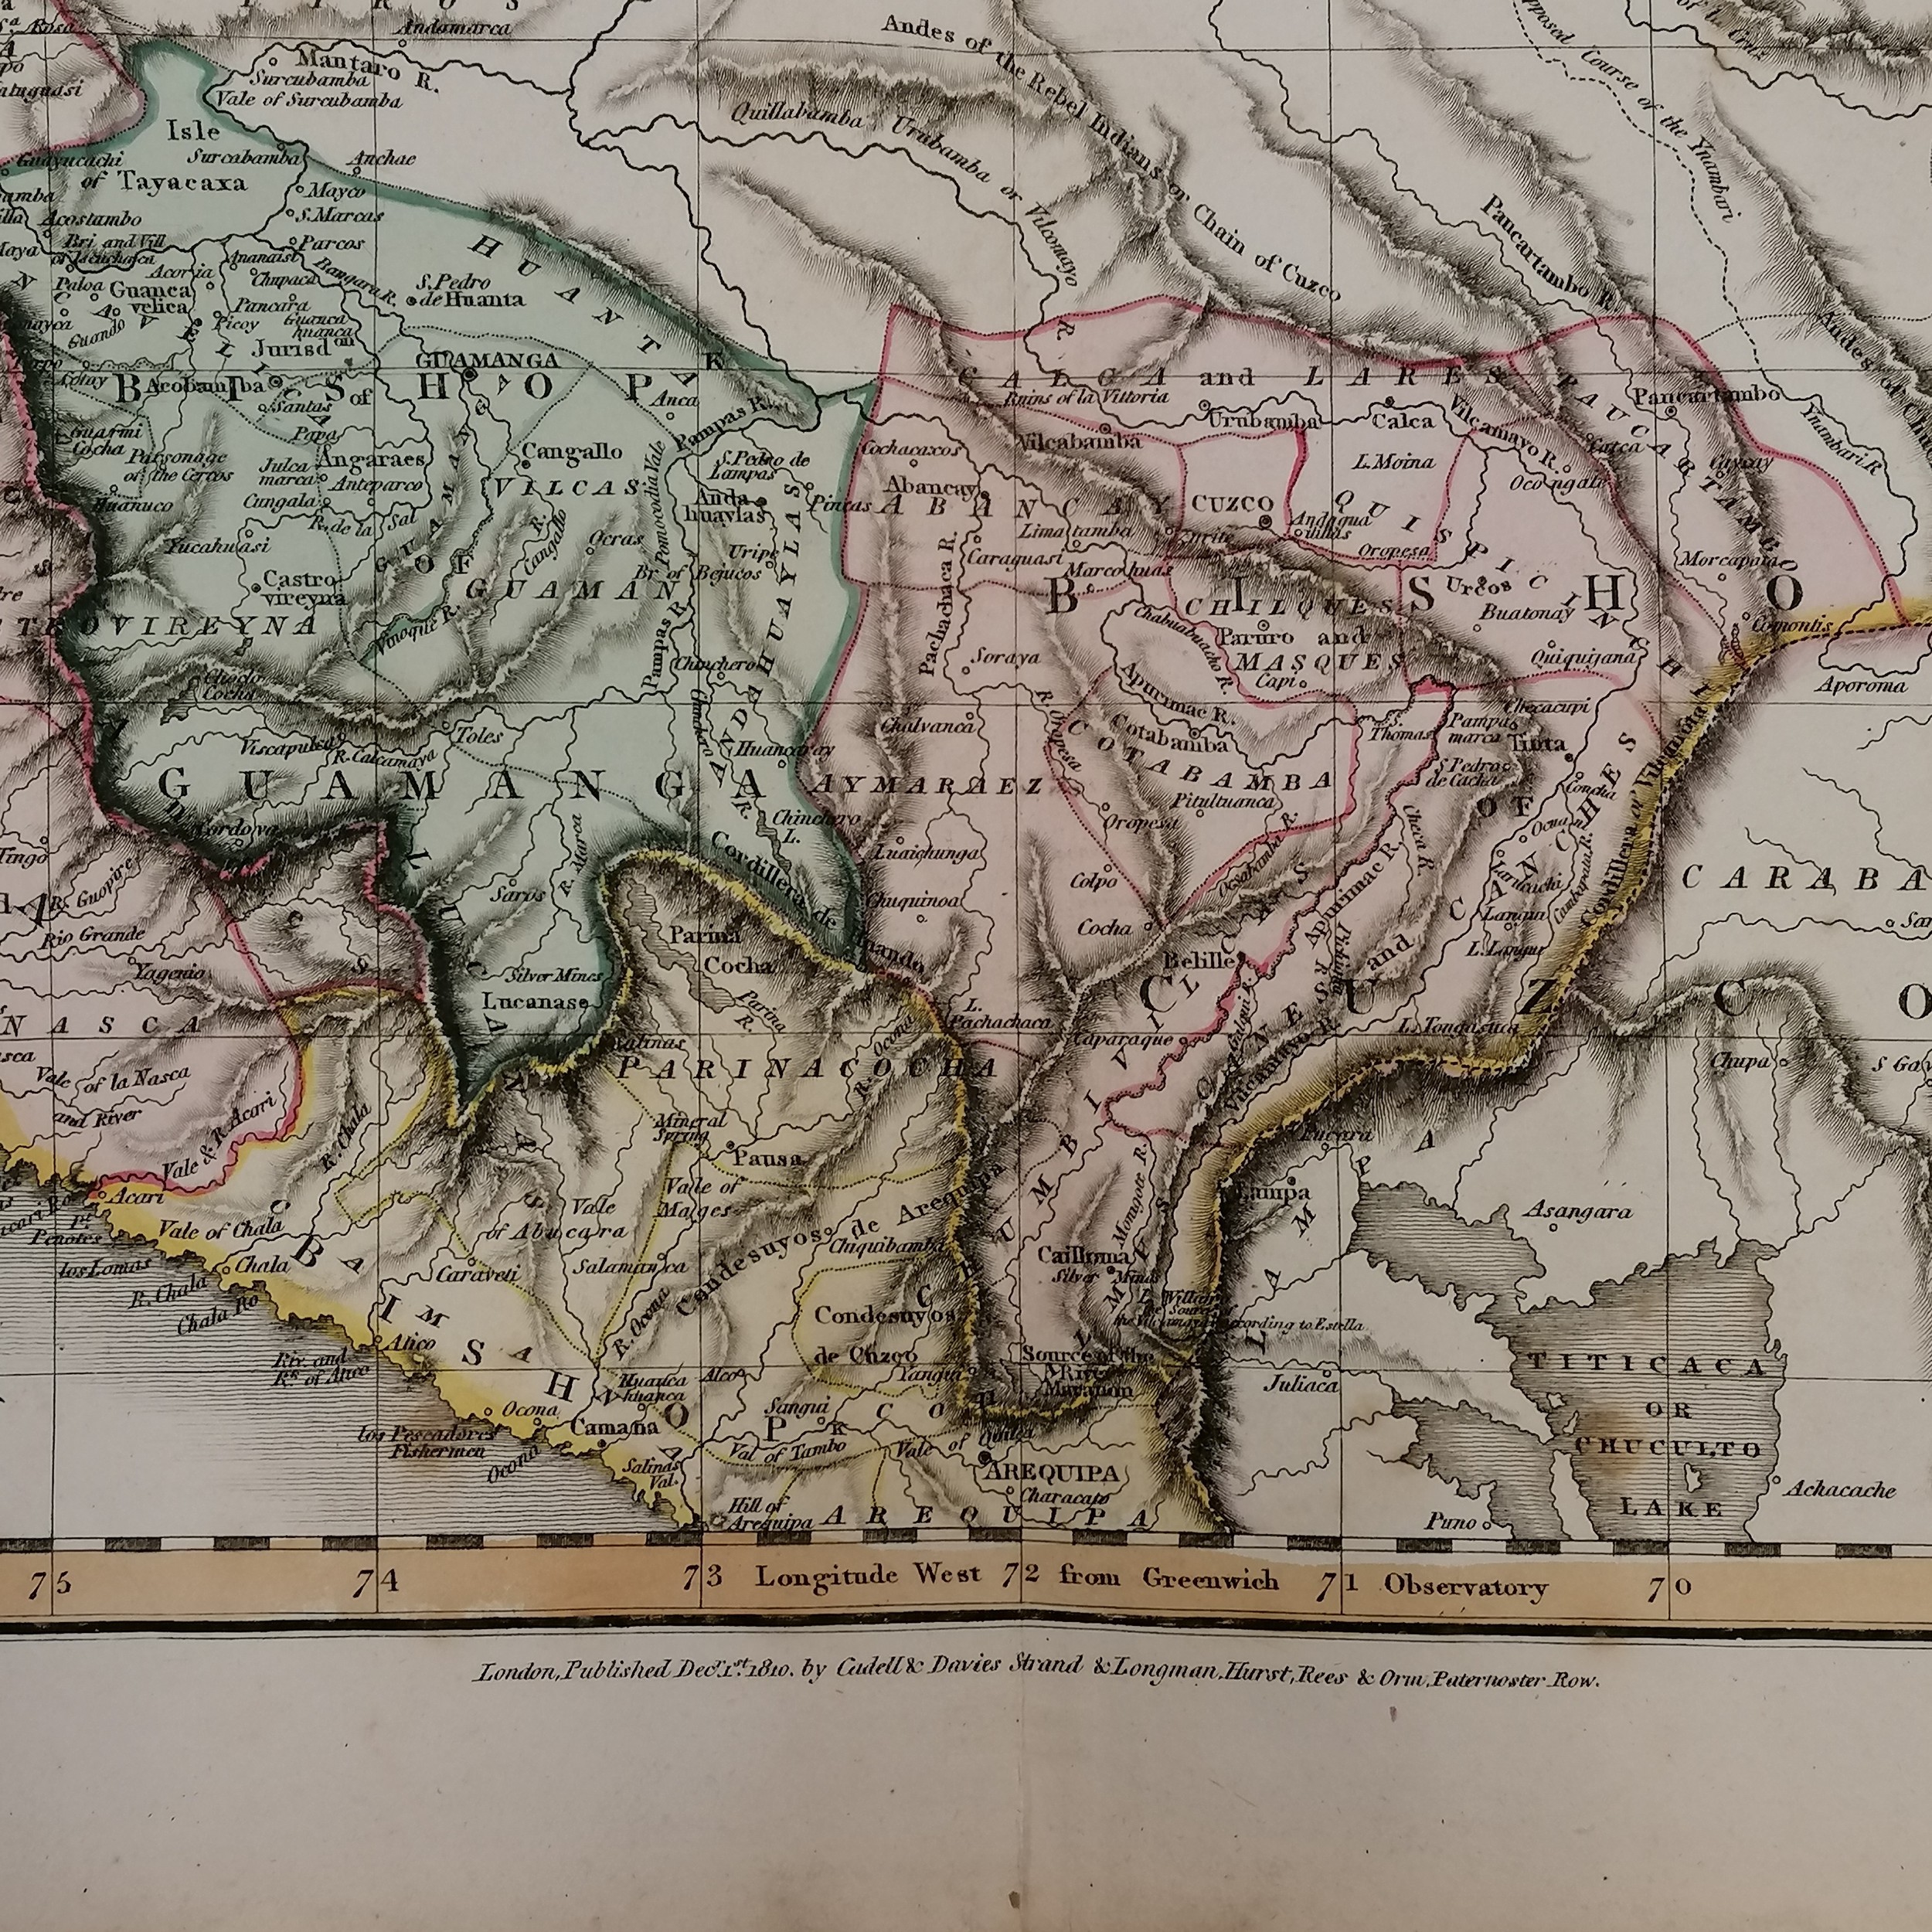 3 x large Pinkertons maps 1812 La Plata, 1810 Peru & 1809 Chili (Chile) - 84cm x 55cm - Image 3 of 6